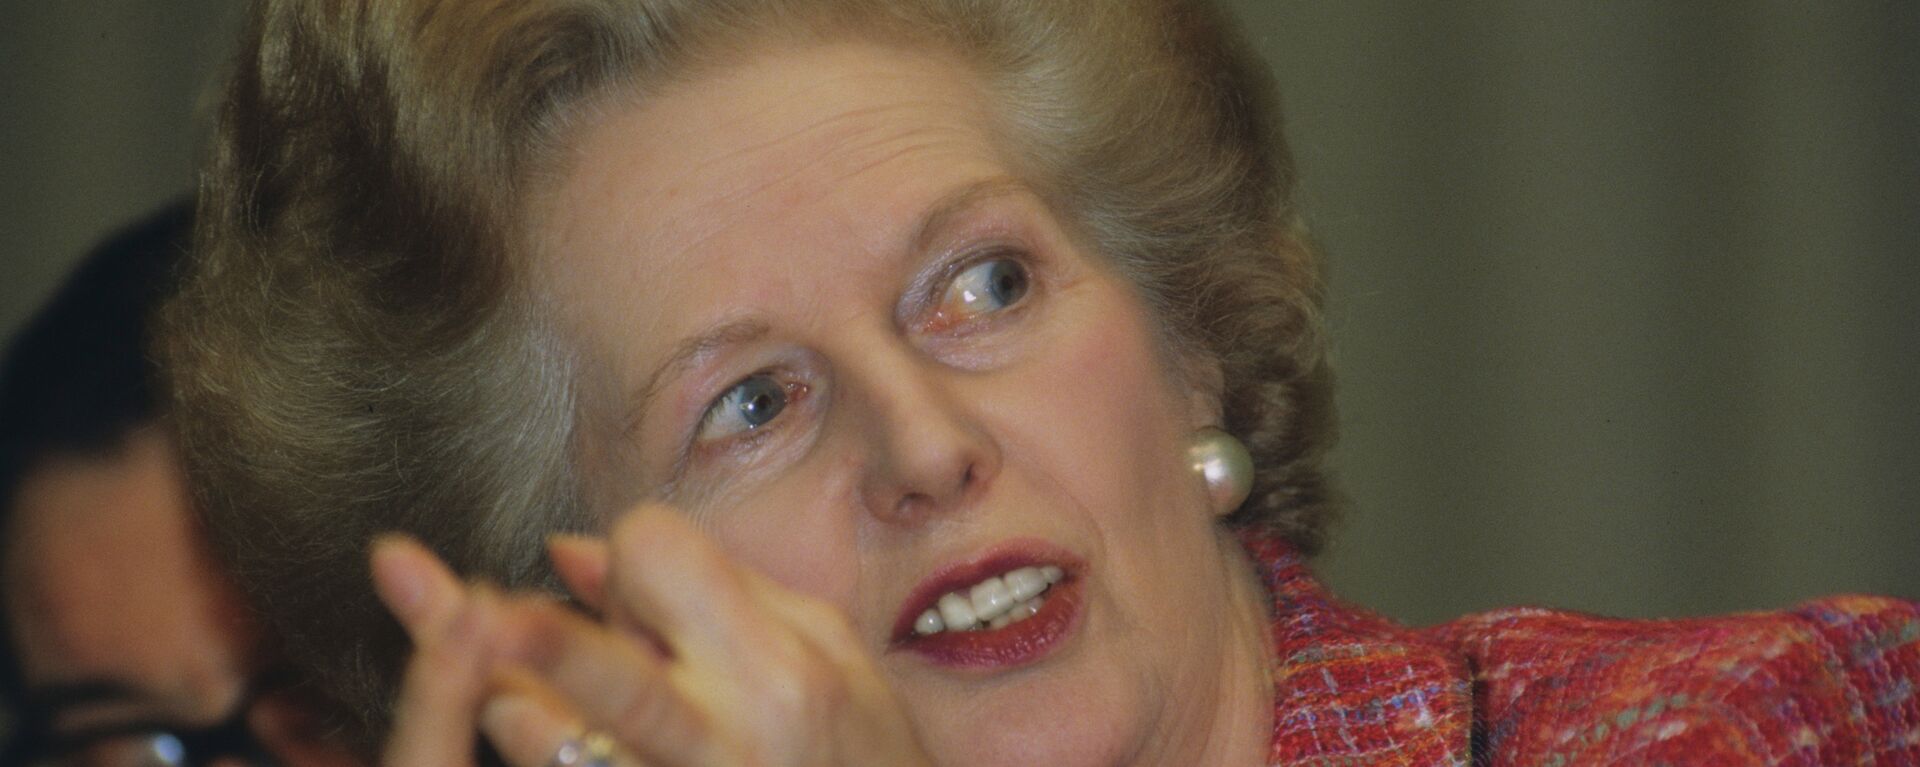 Former British Prime Minister Margaret Thatcher in 1991 - Sputnik International, 1920, 04.12.2020